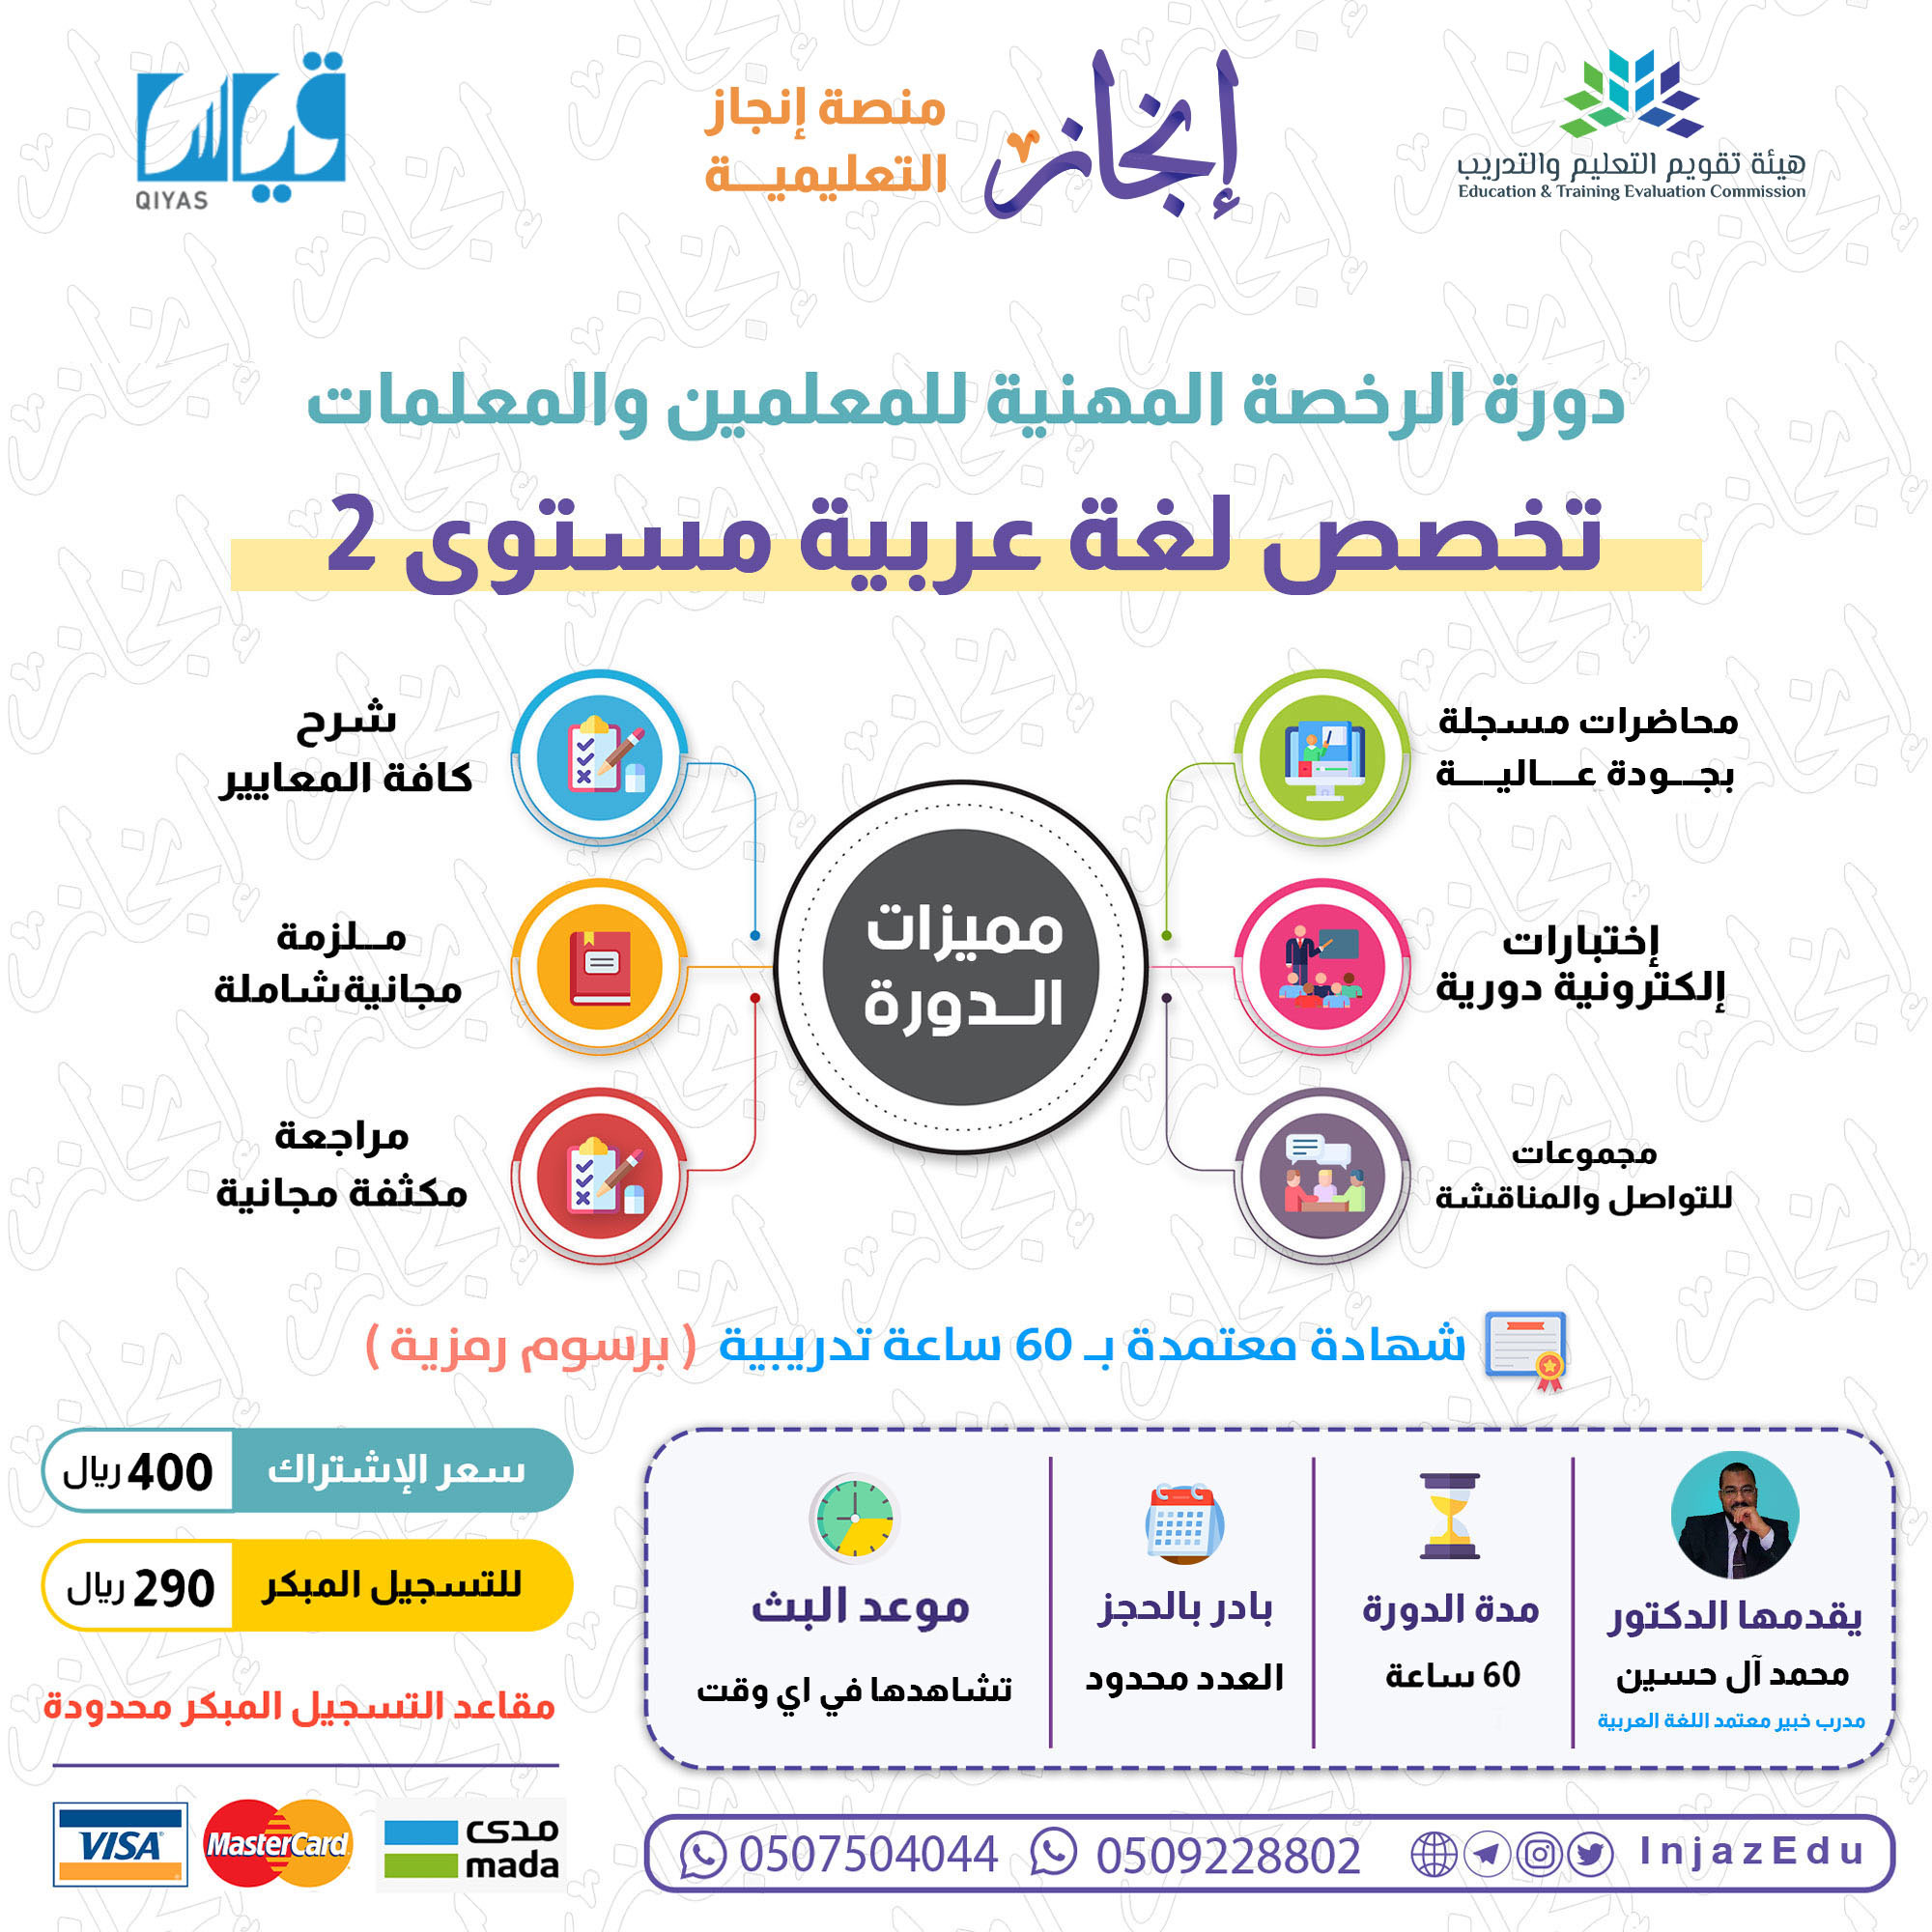 دورة الرخصة المهنية اللغة العربية (2)  ( مسجلة )